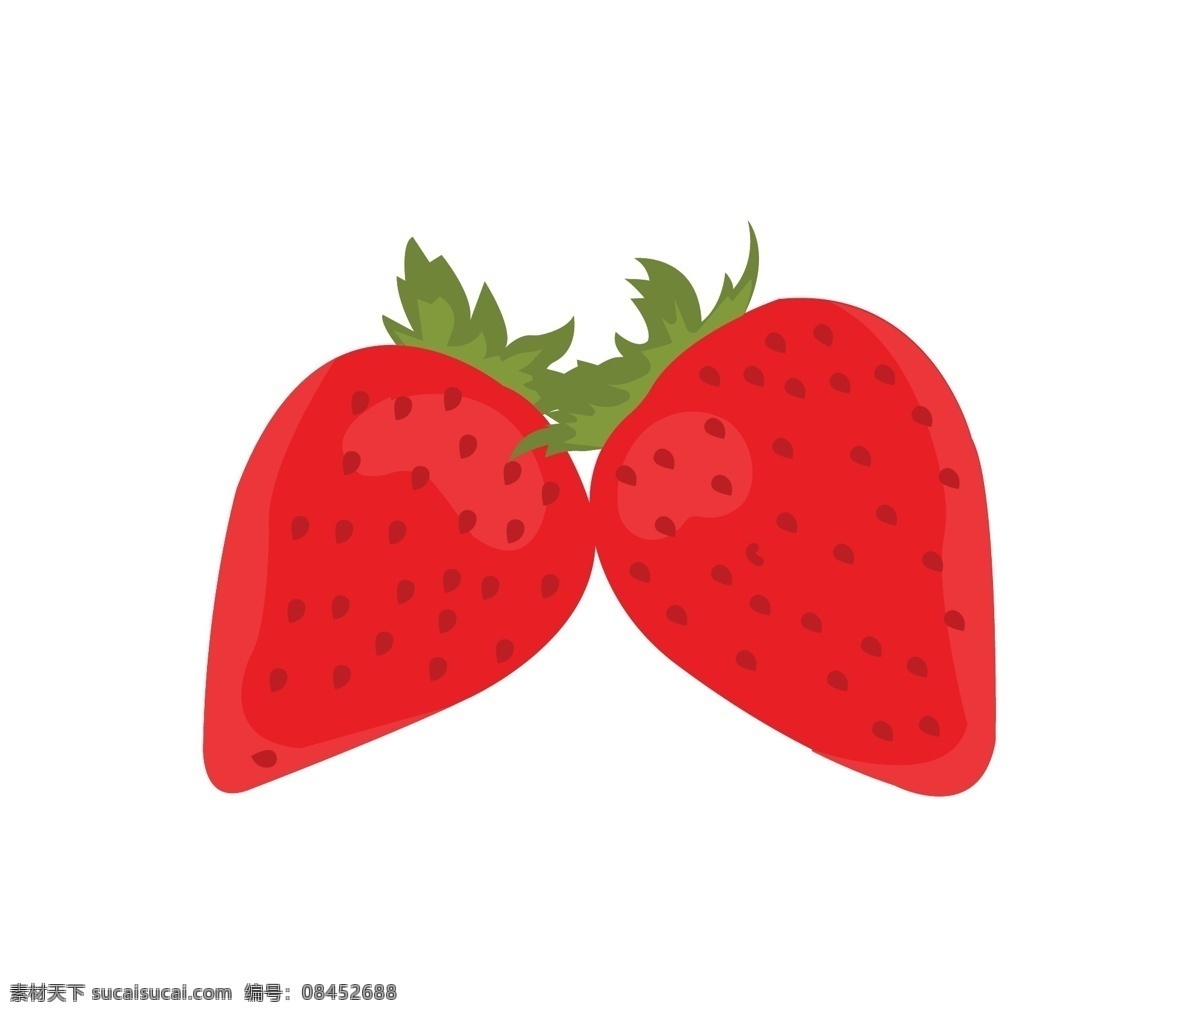 手绘草莓 卡通草莓 草莓口味 草莓味 草莓包装盒 草莓包装袋 草莓素材 水果 草莓 草莓汁 草莓干 新鲜草莓 元素